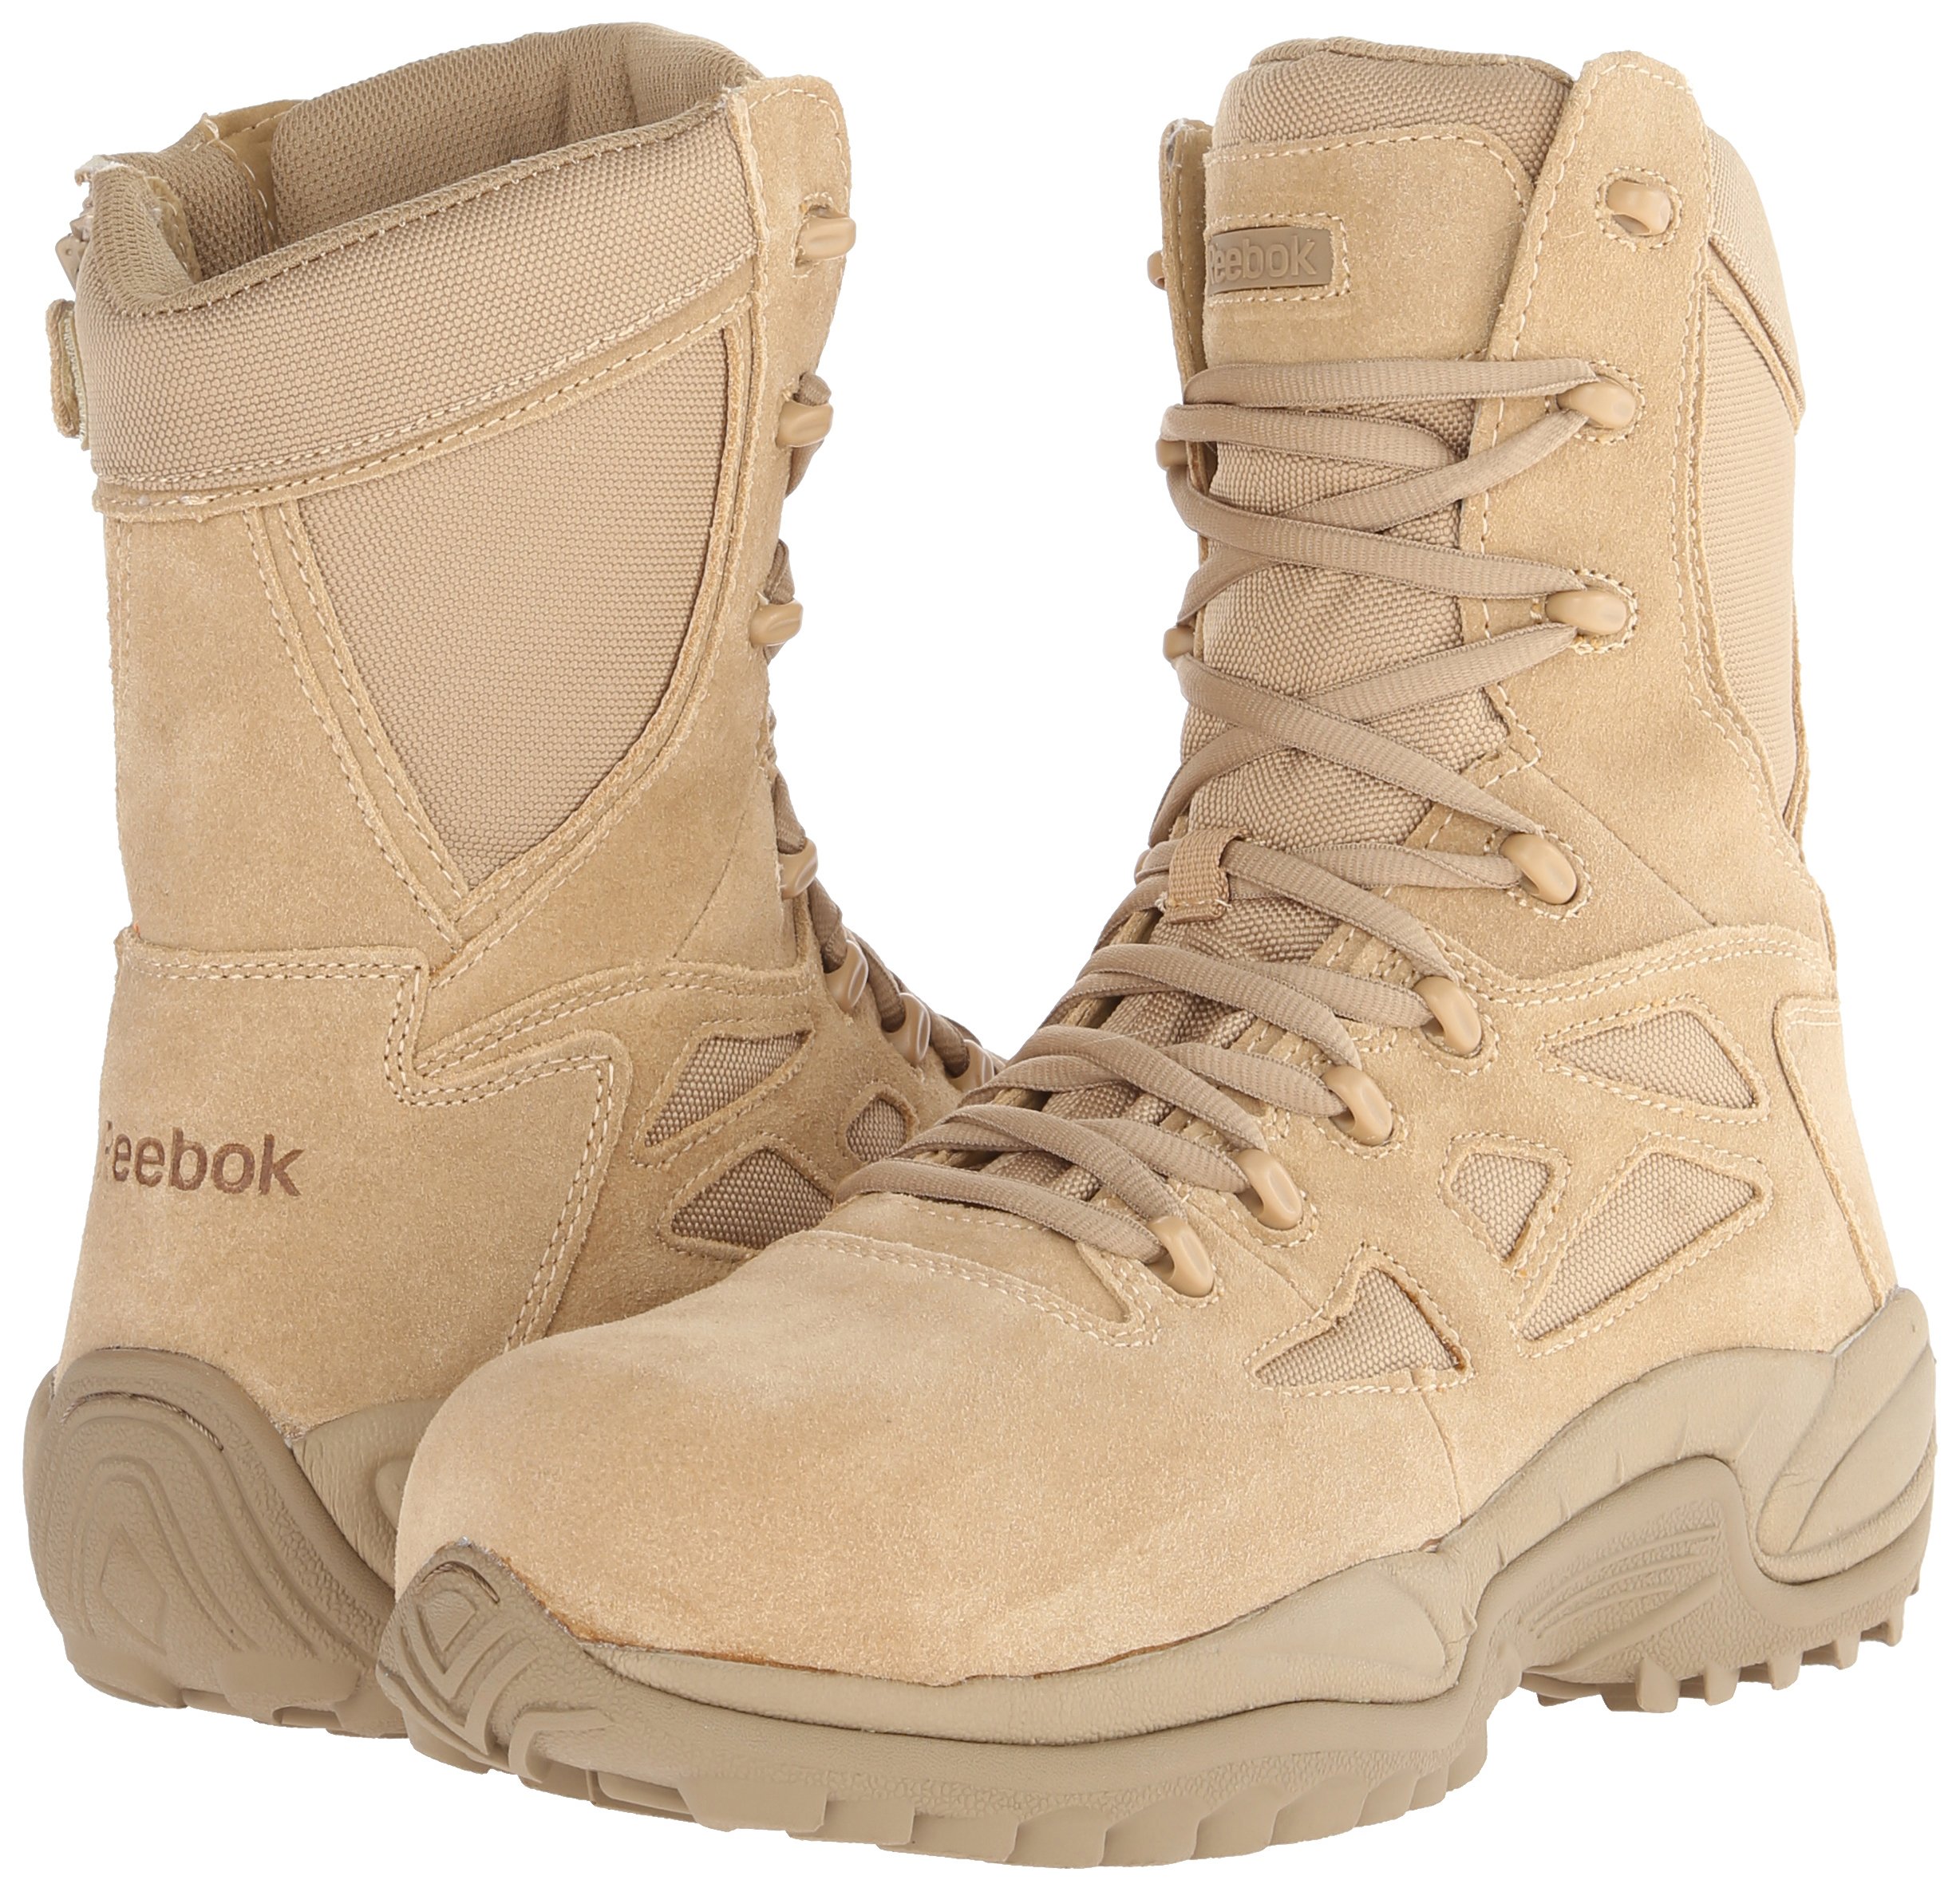 Reebok Work Duty Men's Rapid Response Tactical Boot